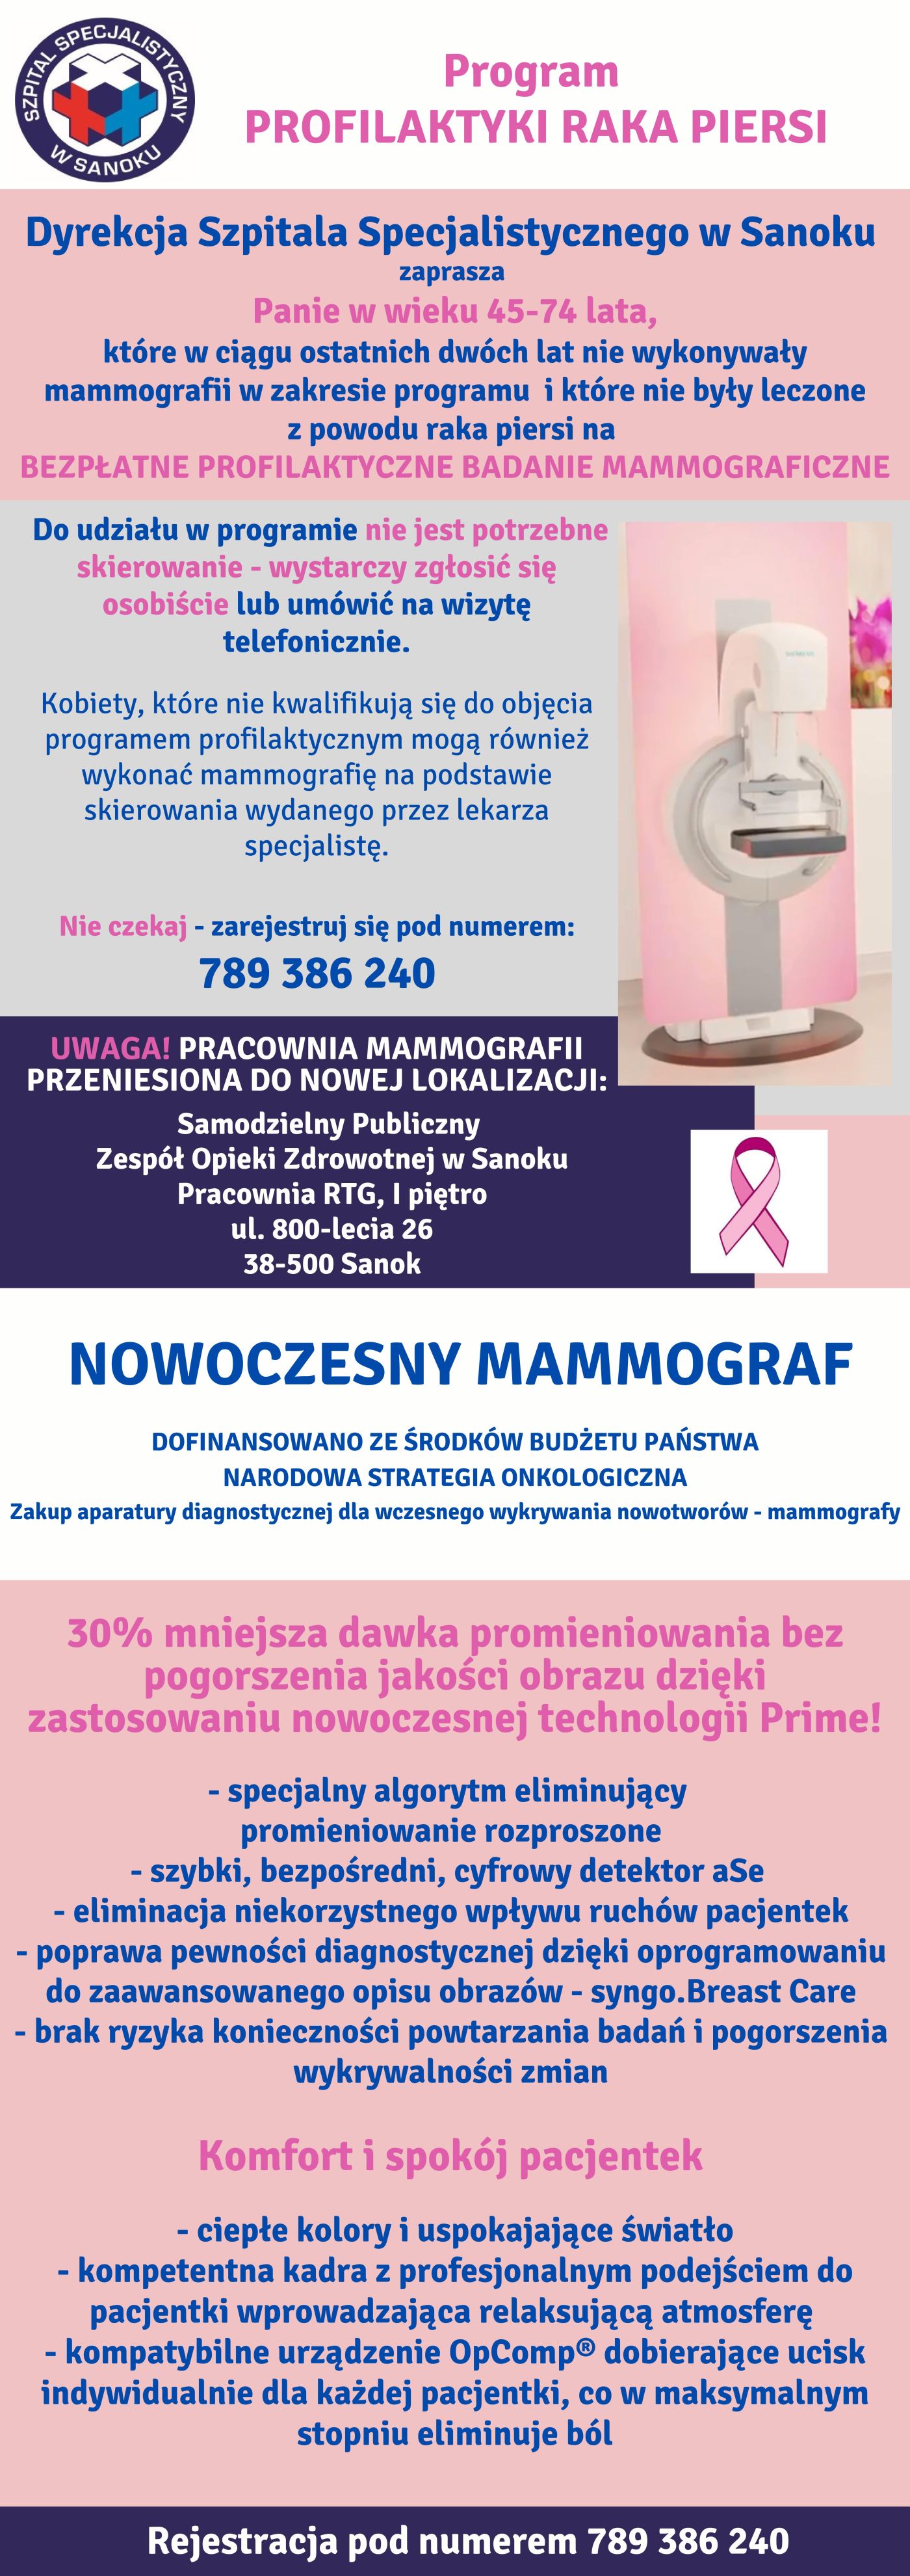 ulotka zawierająca informację na temat programu profilaktyki raka piersi